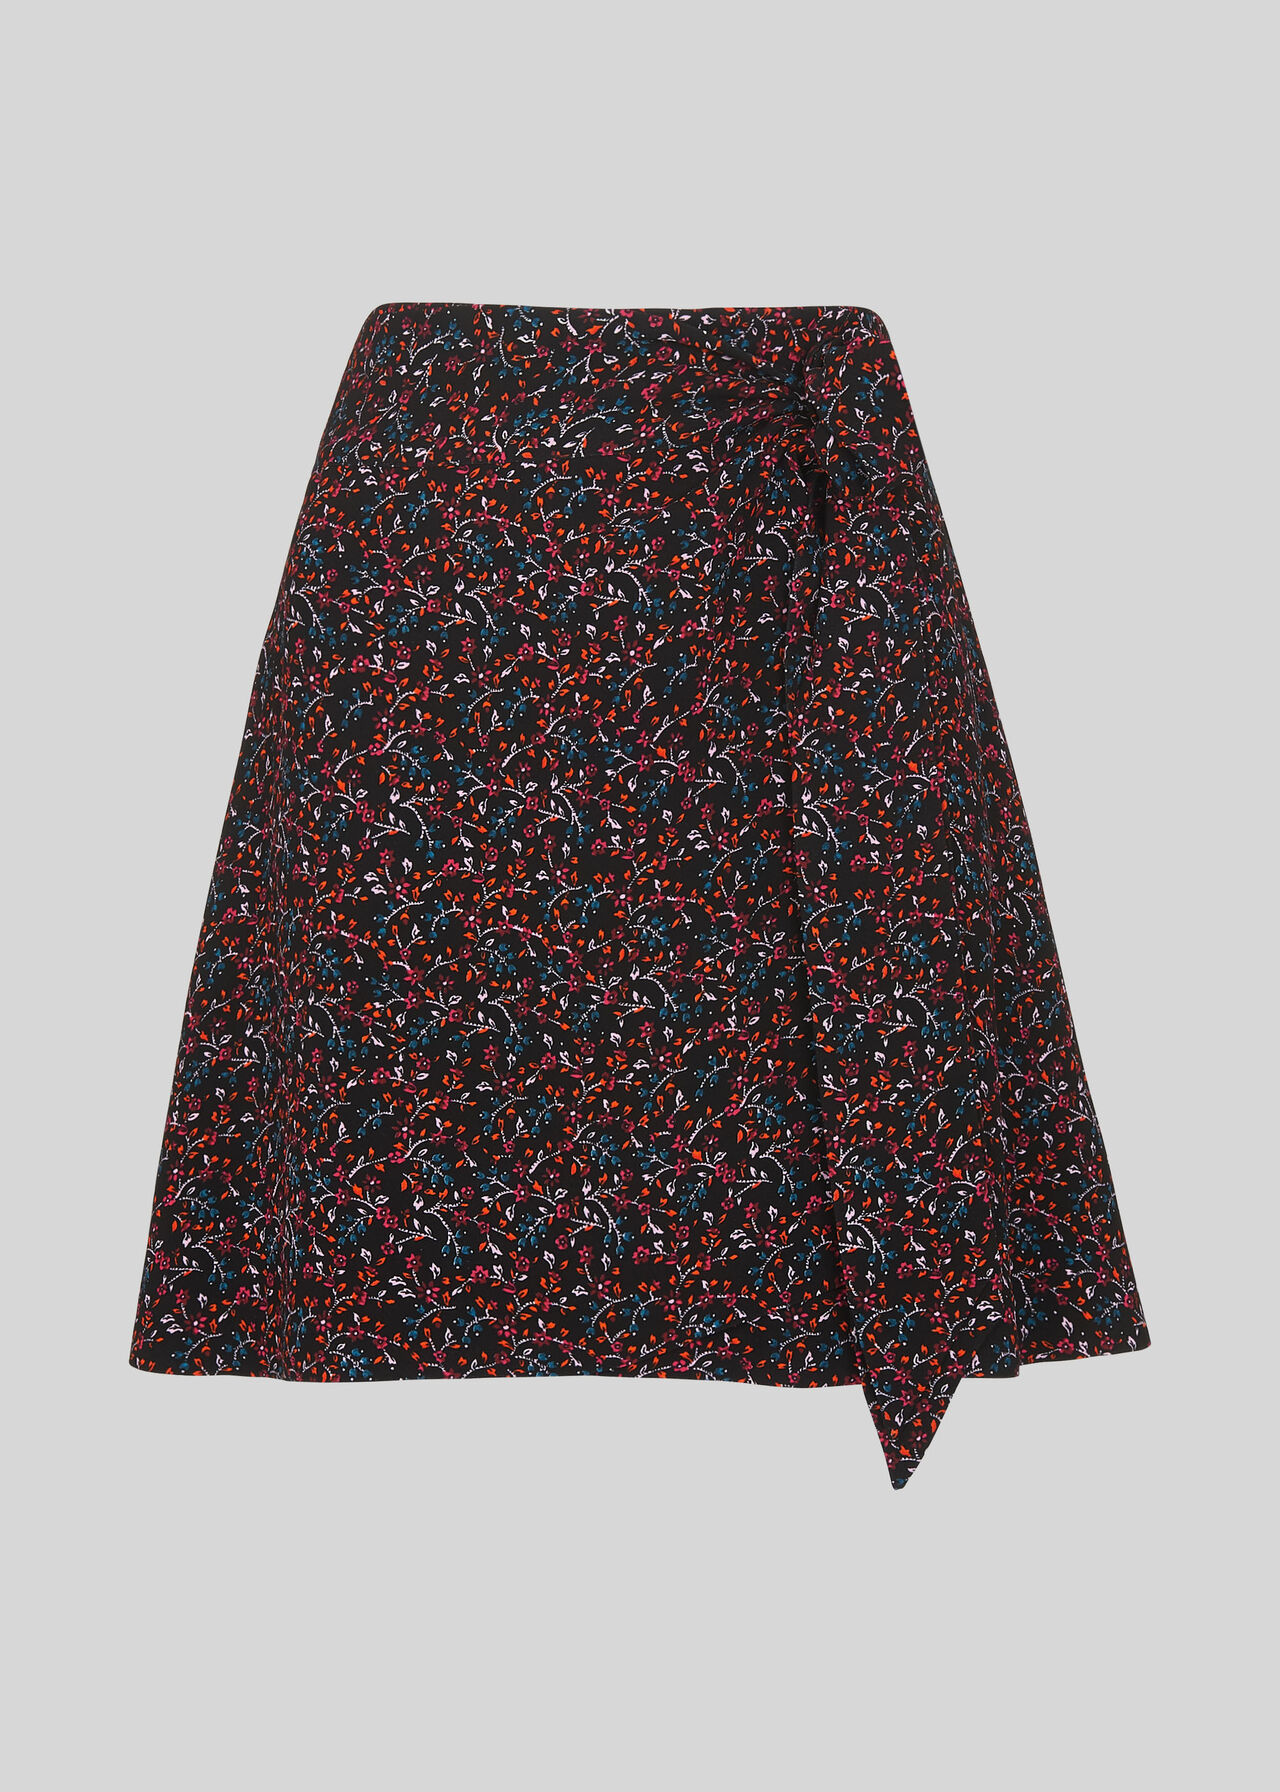 Starflower Print Wrap Skirt Black/Multi